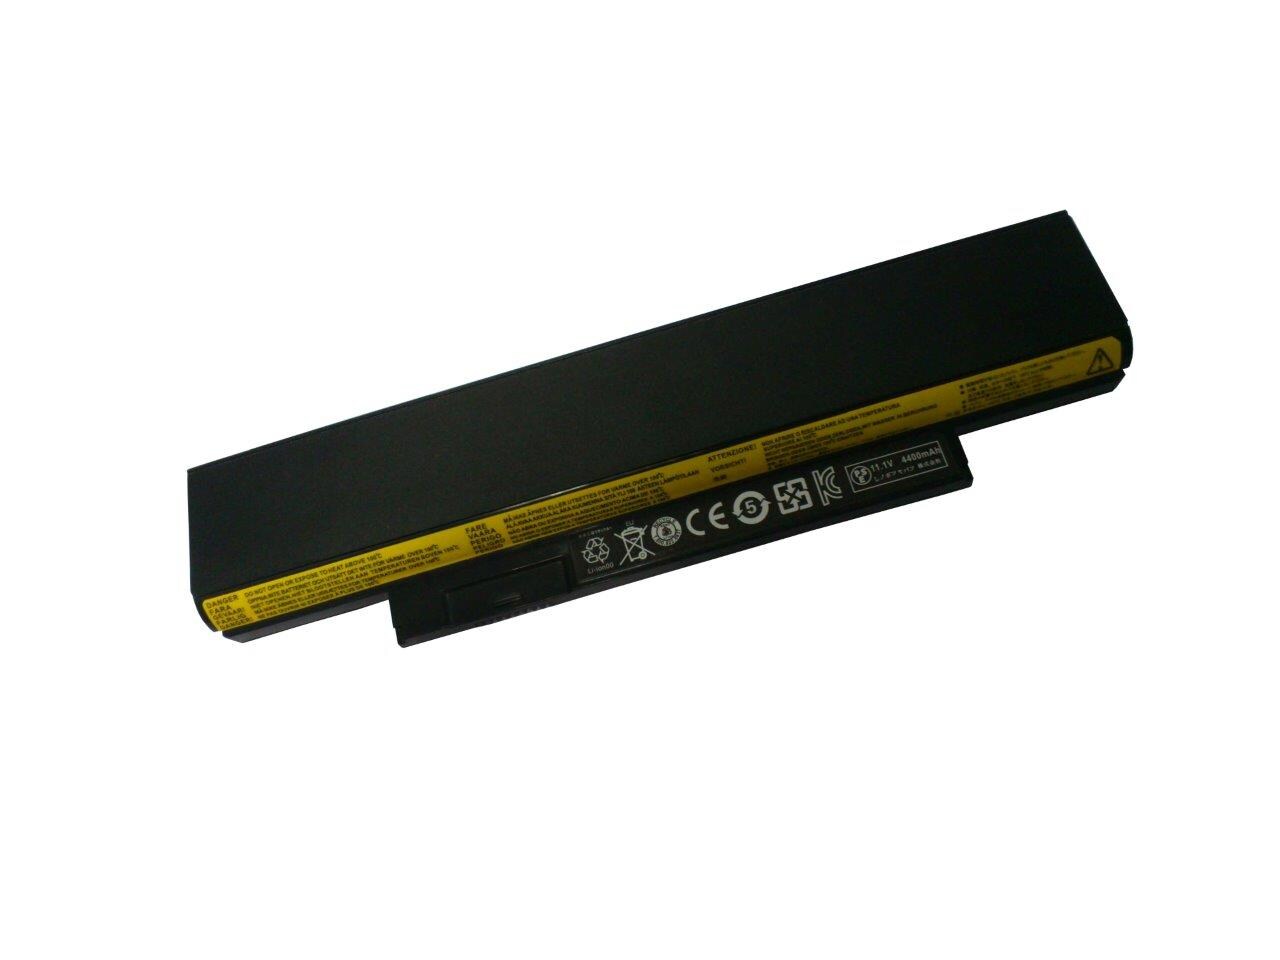 Batteri till Lenovo Thinkpad X130e mm